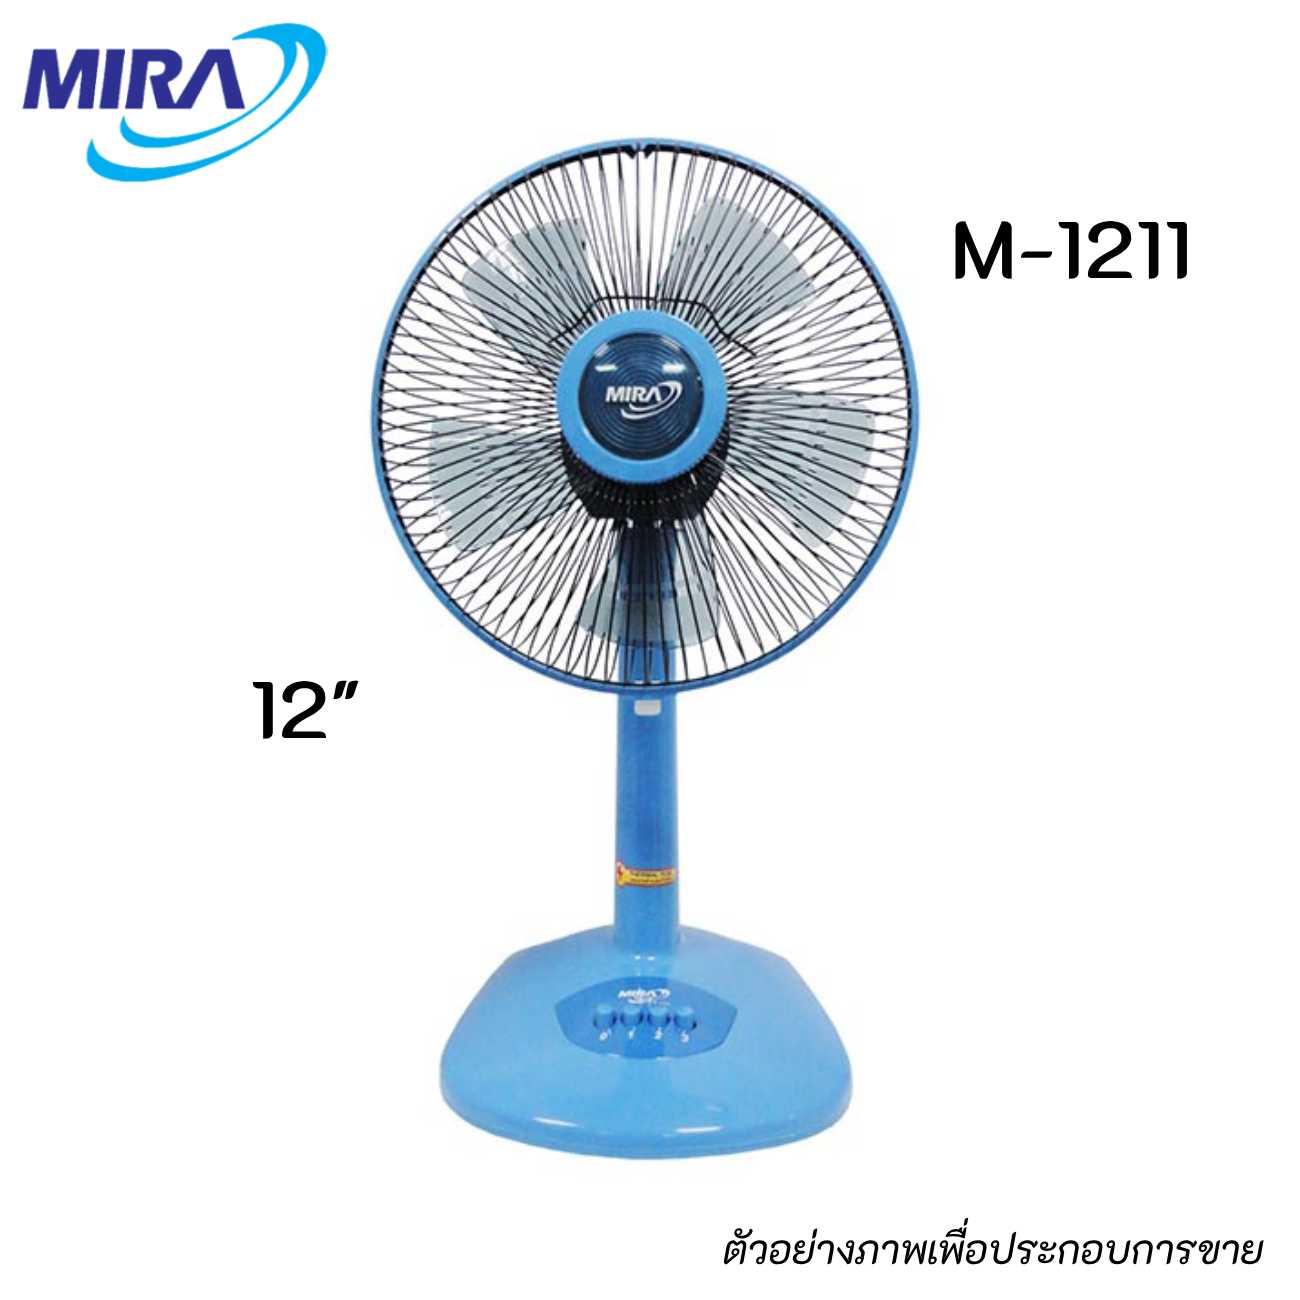 MIRA M-1211 พัดลมตั้งโต๊ะ ขนาด 12 นิ้ว สีฟ้า